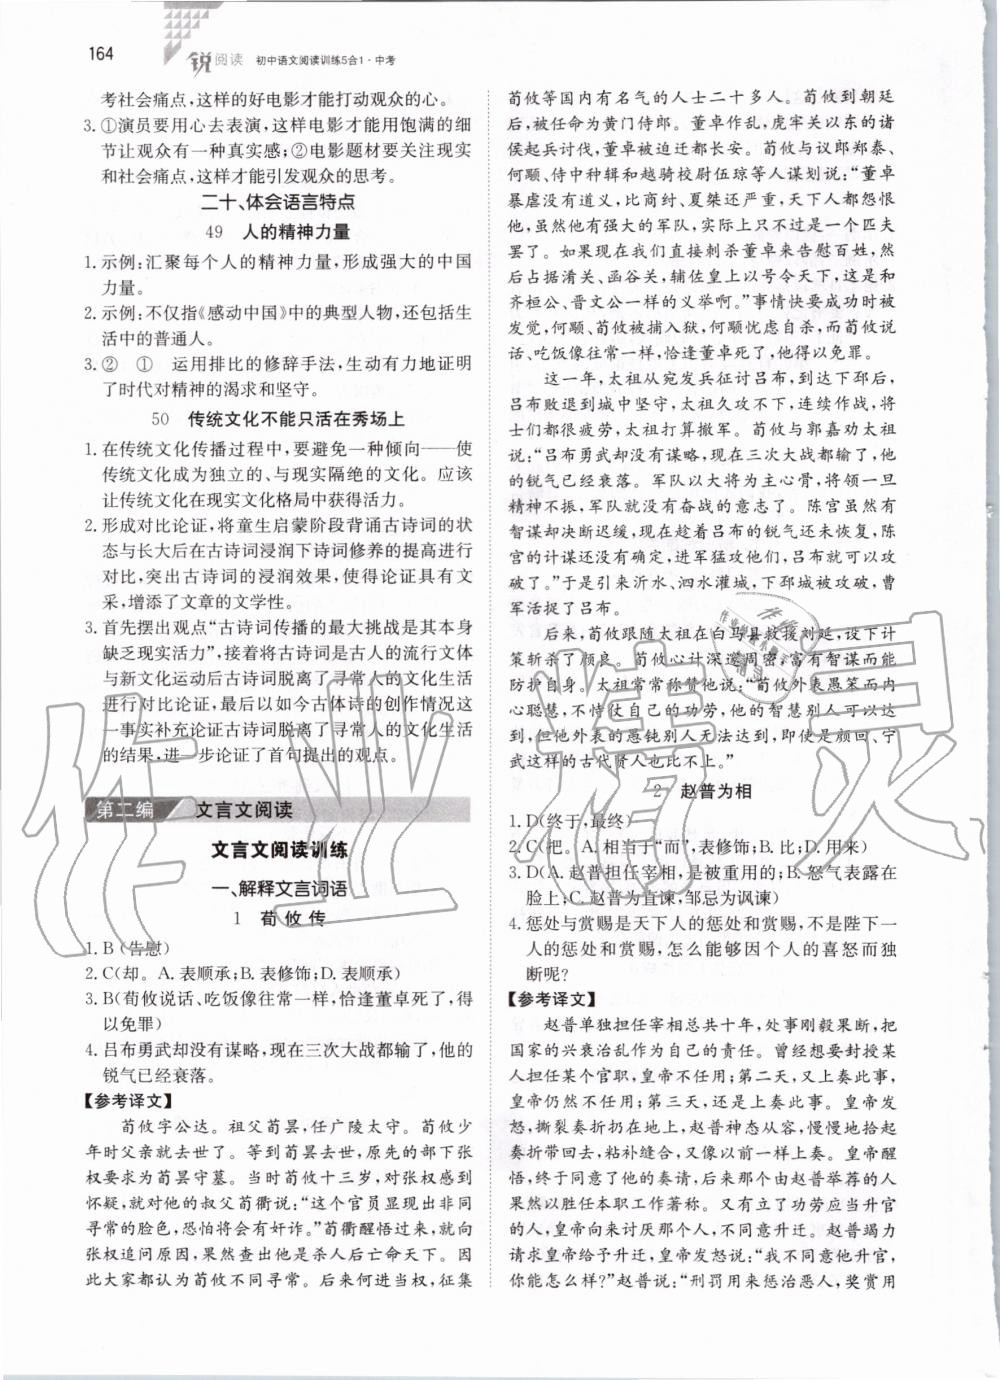 2019年锐阅读初中语文阅读训练5合1中考 第10页